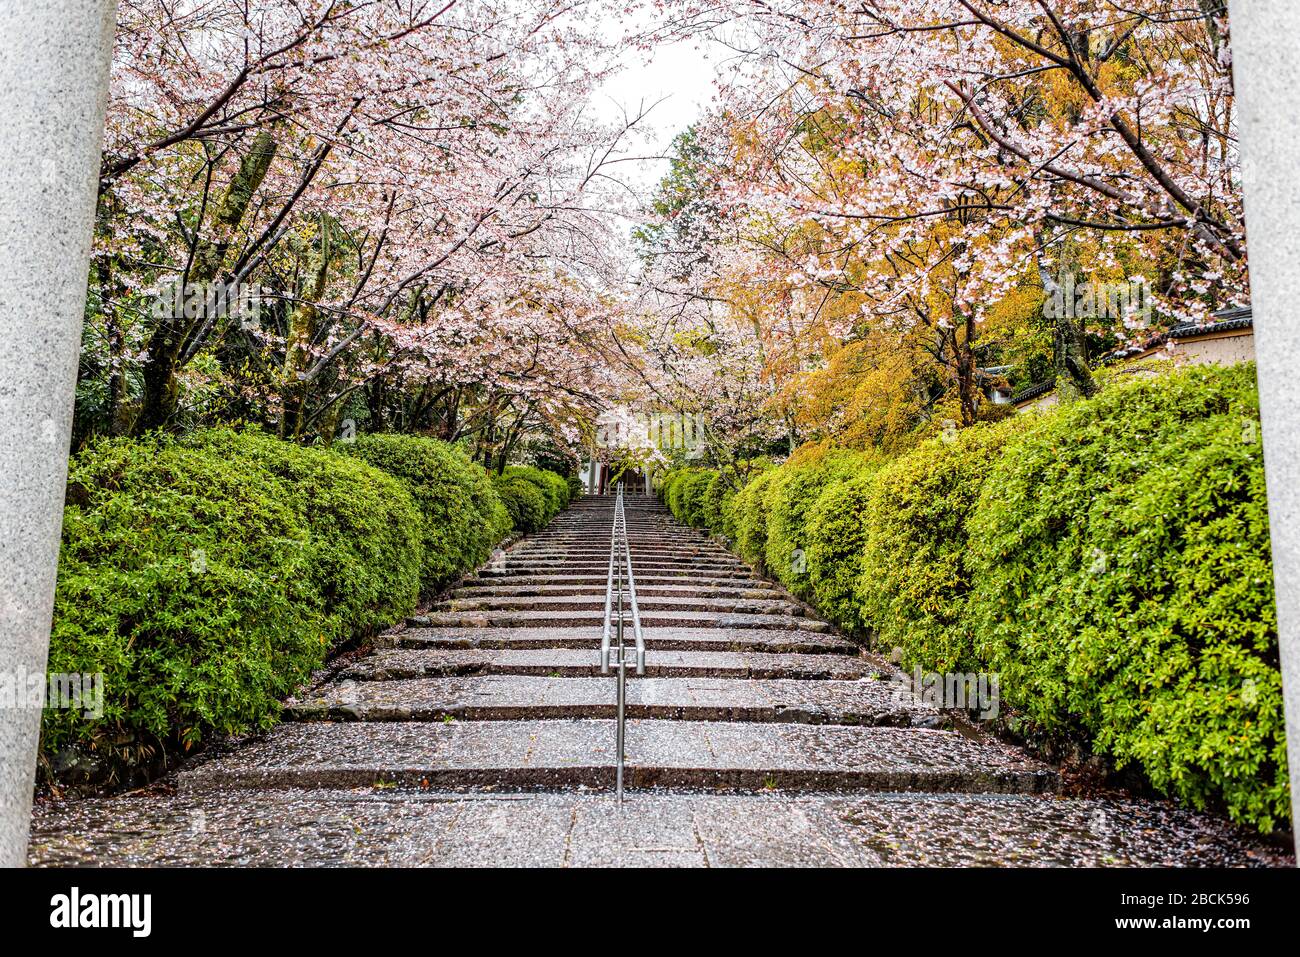 Treppe nasse Stufen, bedeckt mit Kirschblüten Blumen Sakura Blumenblätter nach Regen mit Geländer und Gartenbäumen im Munetada Jinja Schreintempel in Kyoto, Ja Stockfoto